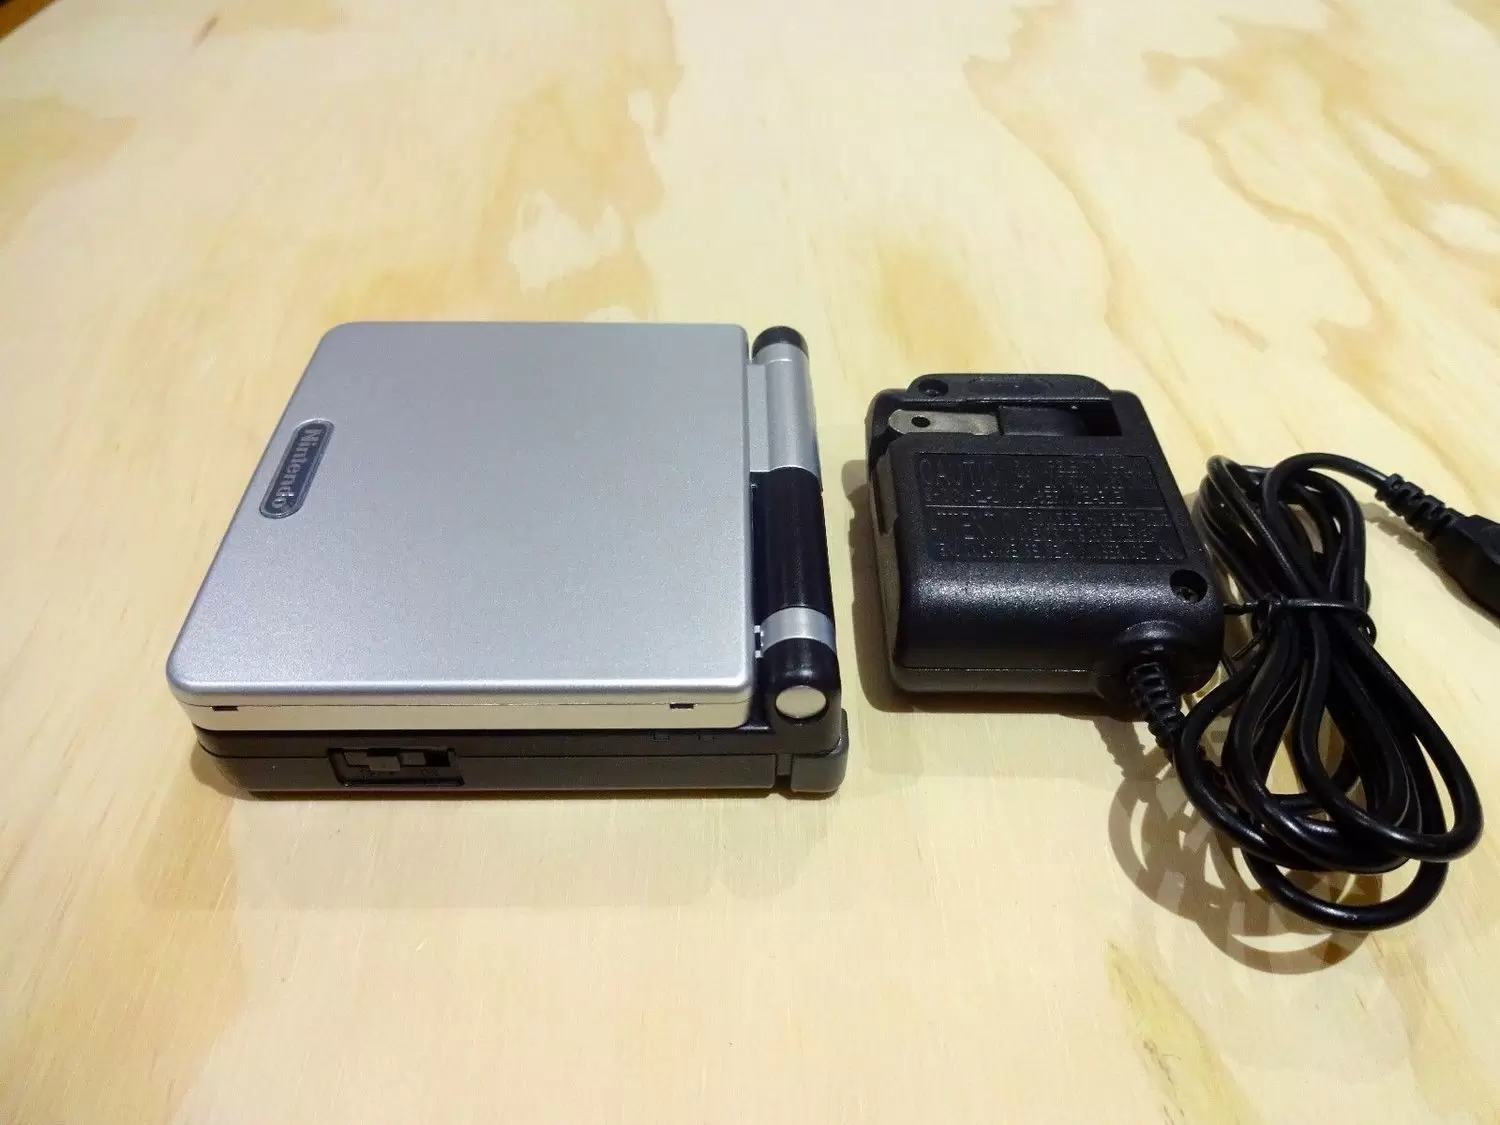 Game Boy Advance SP - Game Boy Advance SP Silver Black